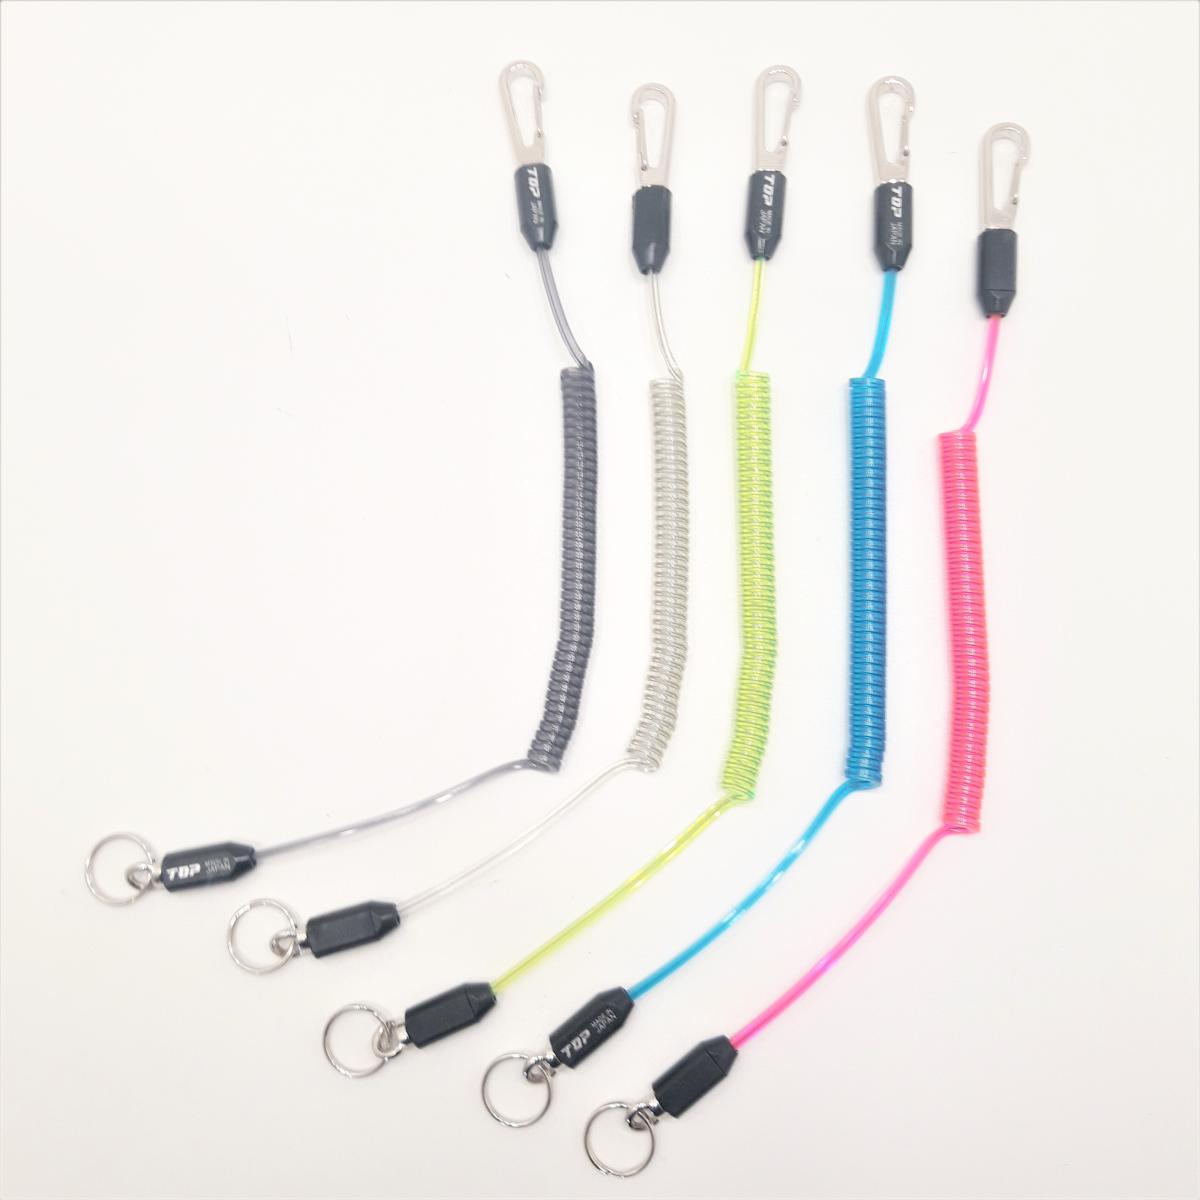 Cordons de sécurité (leash) pour vos outils, 5 couleurs au choix